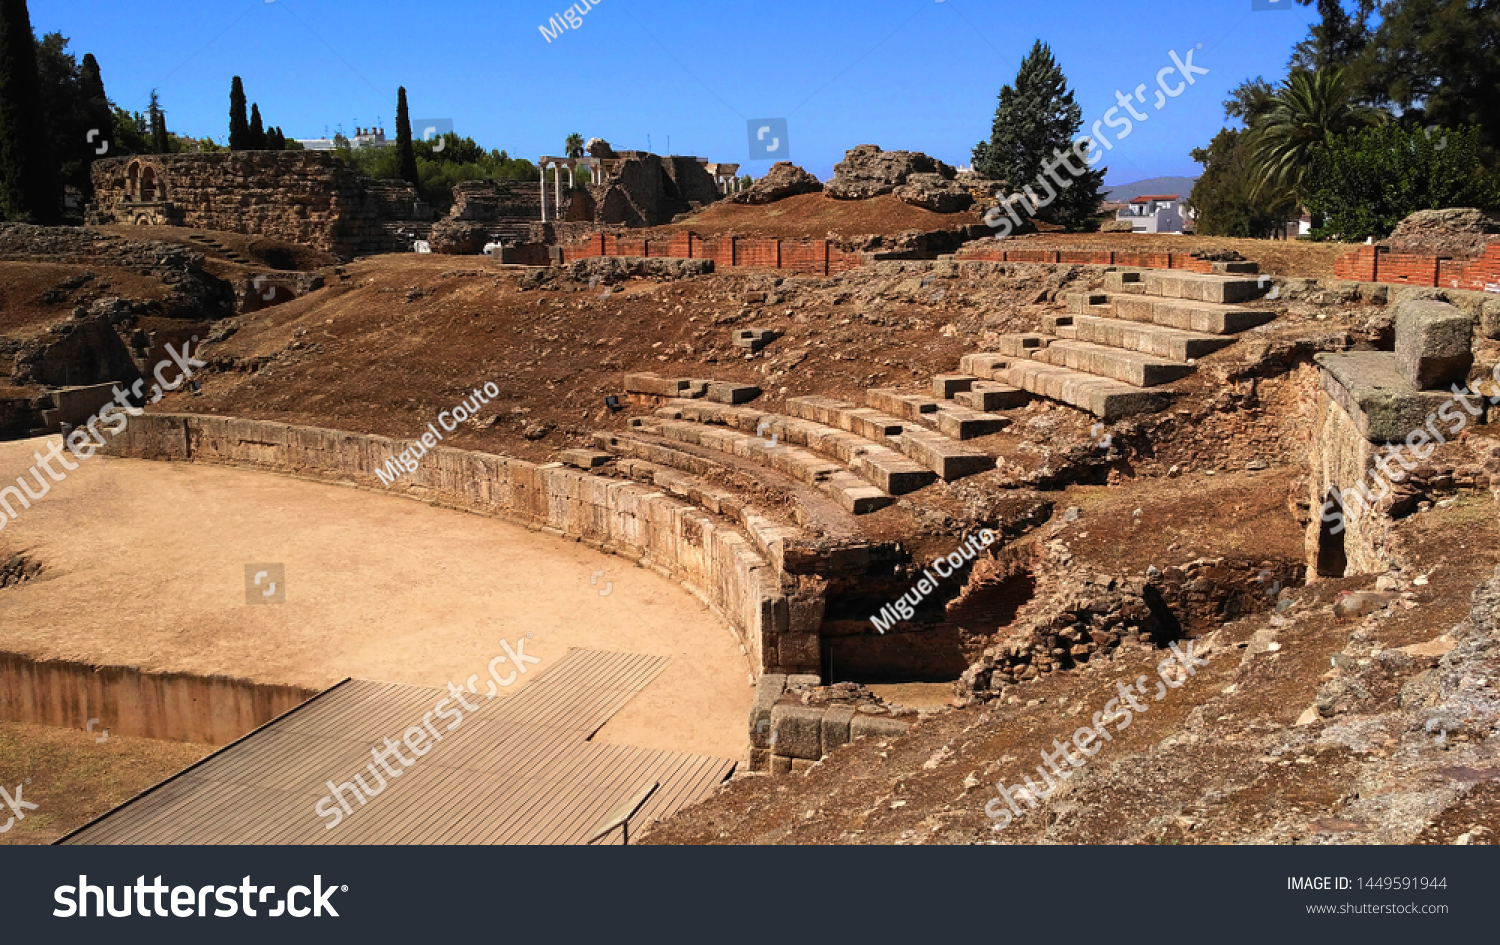 Amphitheatre in Merida (Augusta Emerita). Roman City - Temples, Theatres, Monuments, Sculptures and Arenas -  Estremadura, Spain #1449591944